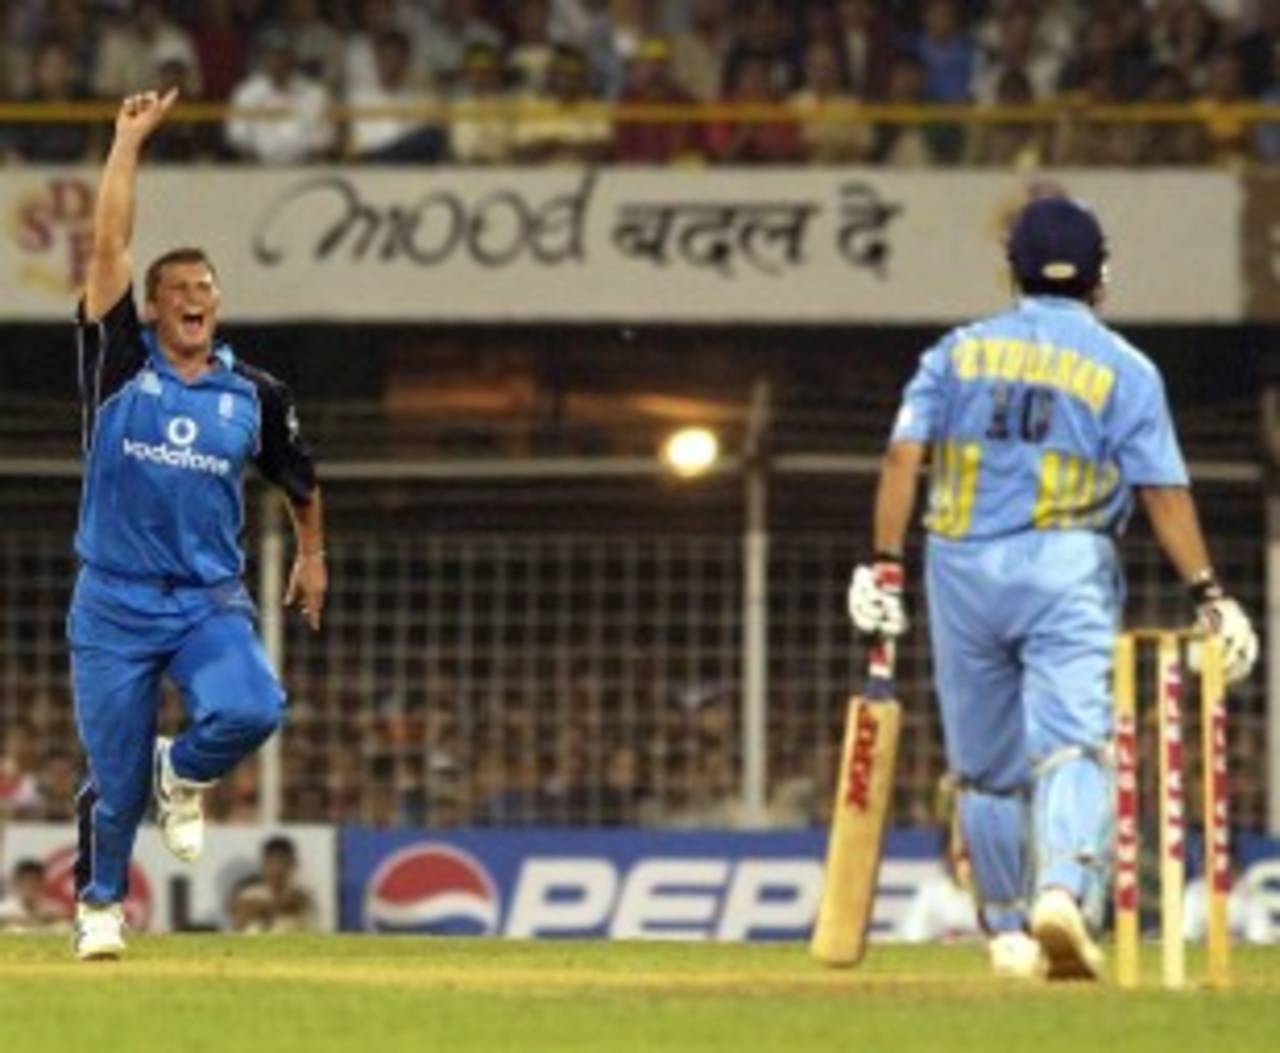 Darren Gough played Sachin Tendulkar in ODIs but never in a Test&nbsp;&nbsp;&bull;&nbsp;&nbsp;Getty Images